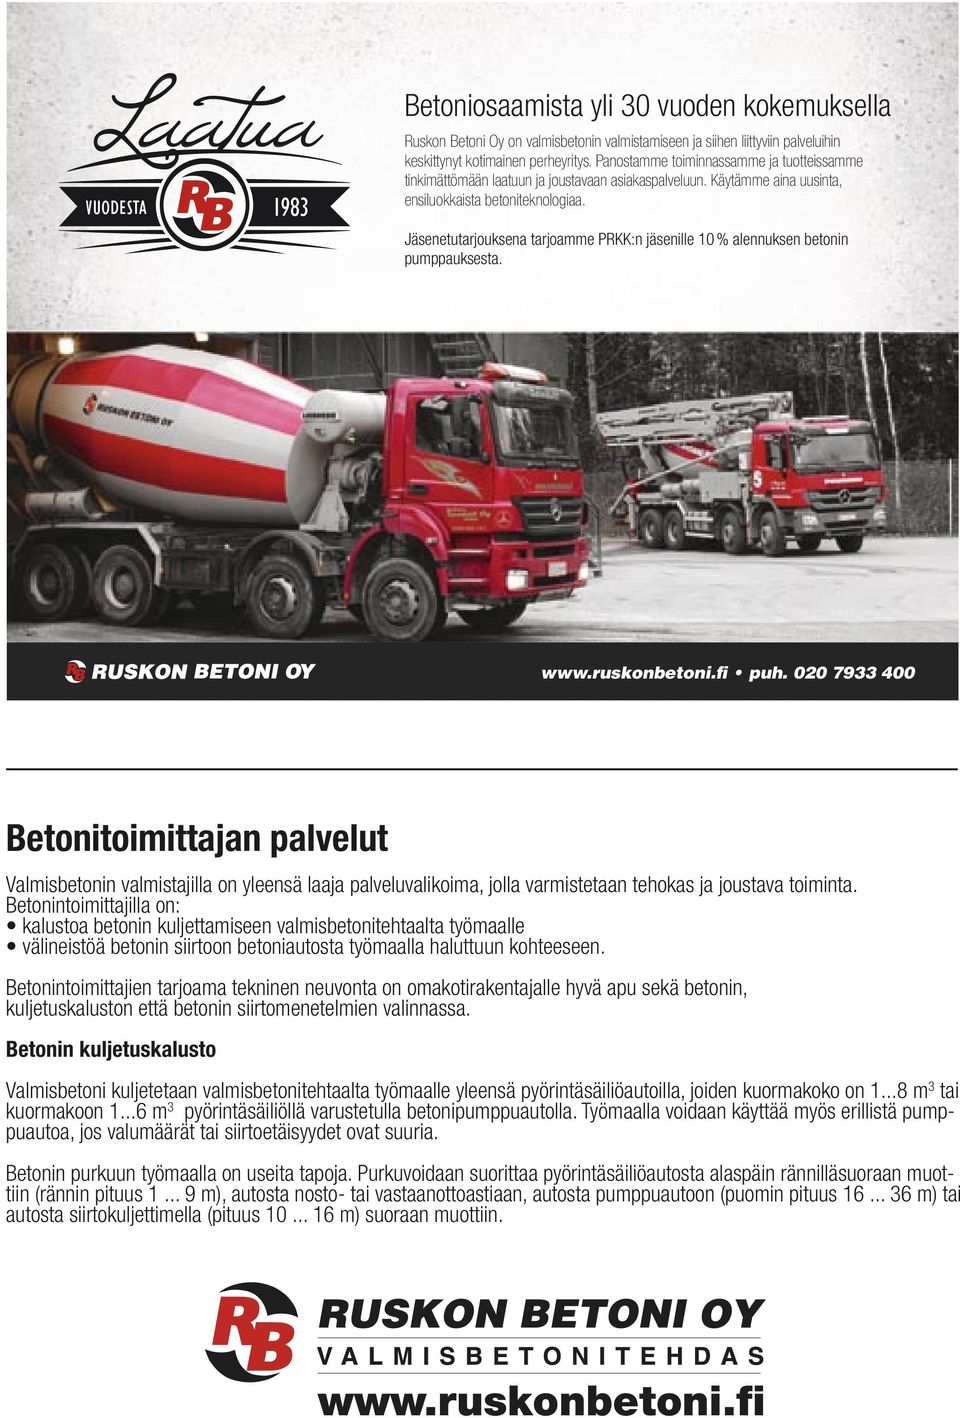 Jäsenetutarjouksena tarjoamme PRKK:n jäsenille 10 % alennuksen betonin pumppauksesta. www.ruskonbetoni.fi puh.